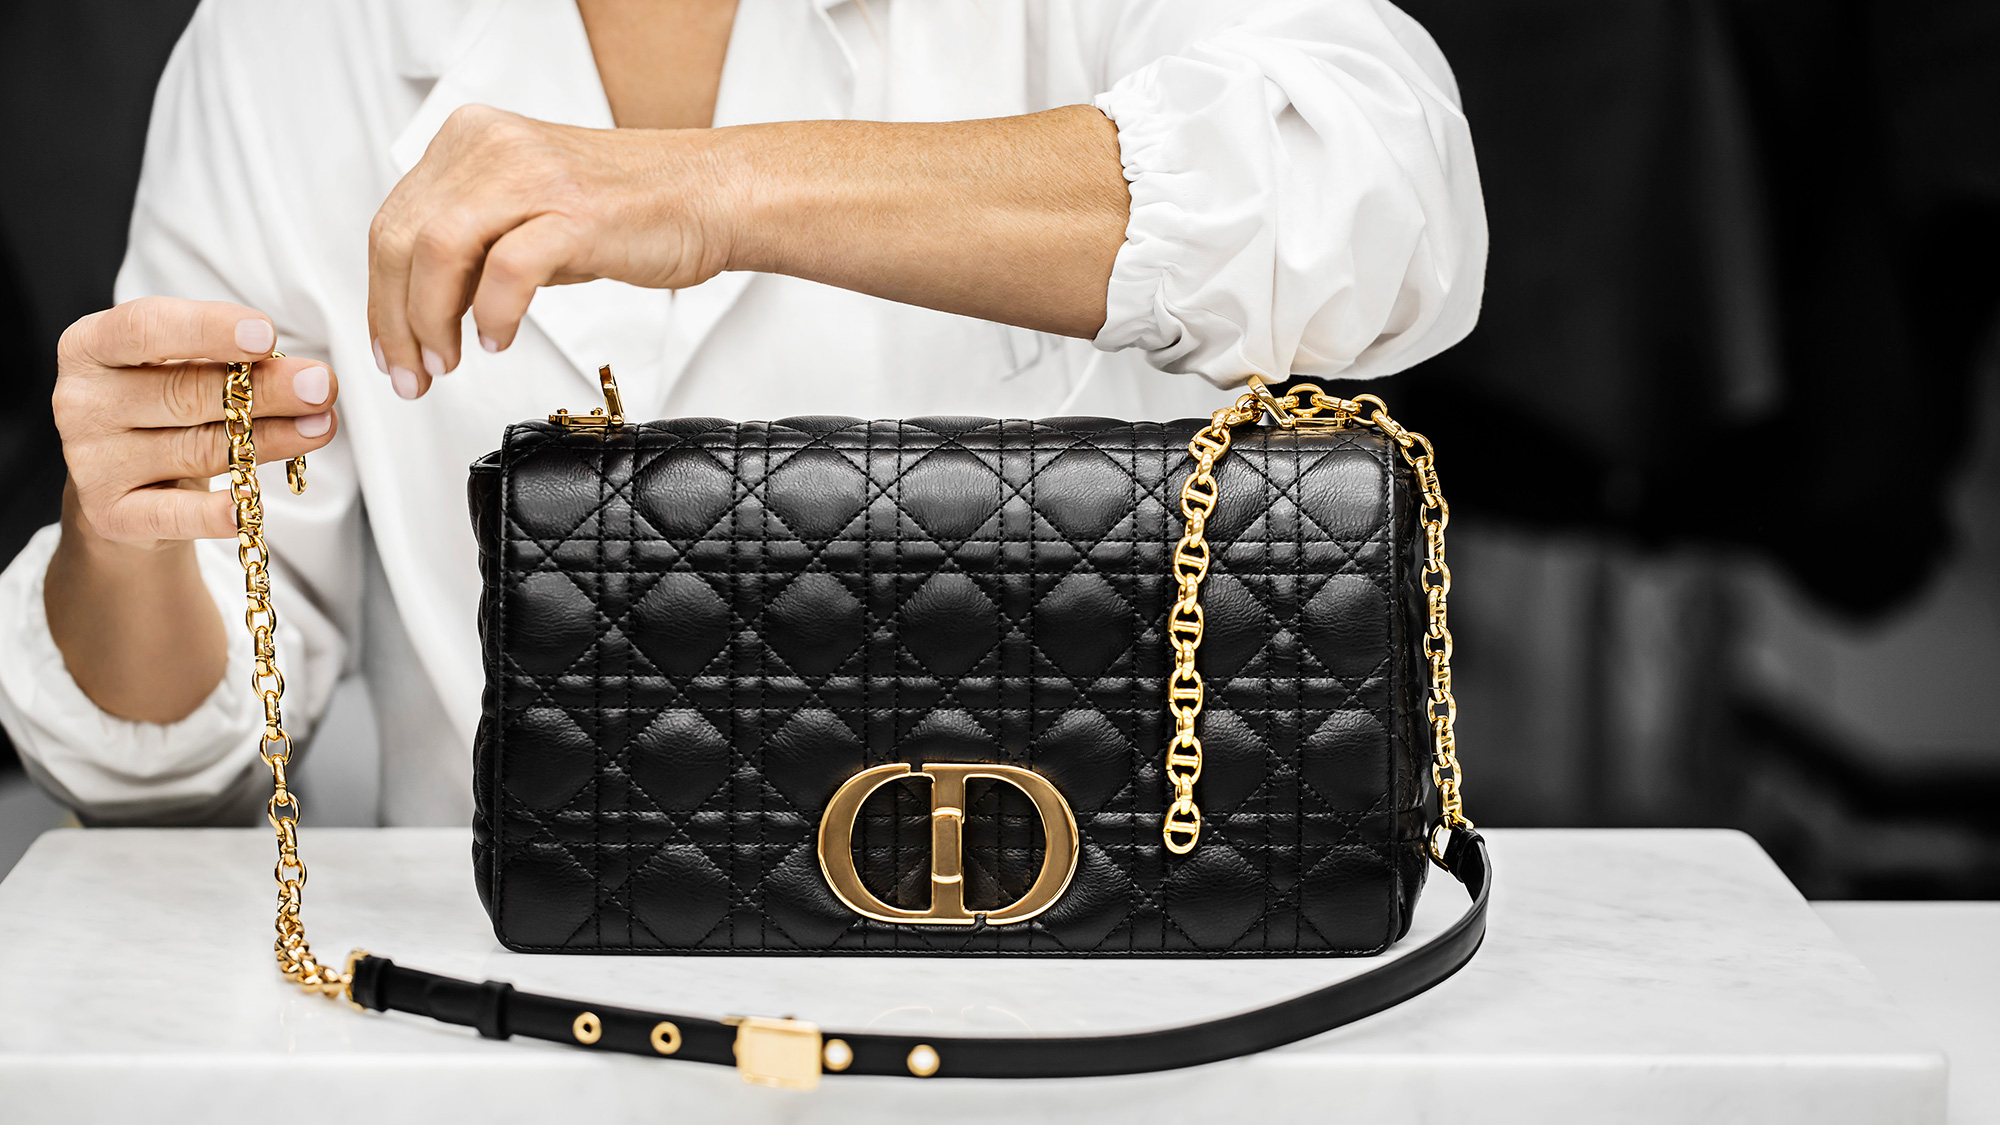 Túi Medium Lady Dior Bag màu đen da cừu 24cm siêu cấp